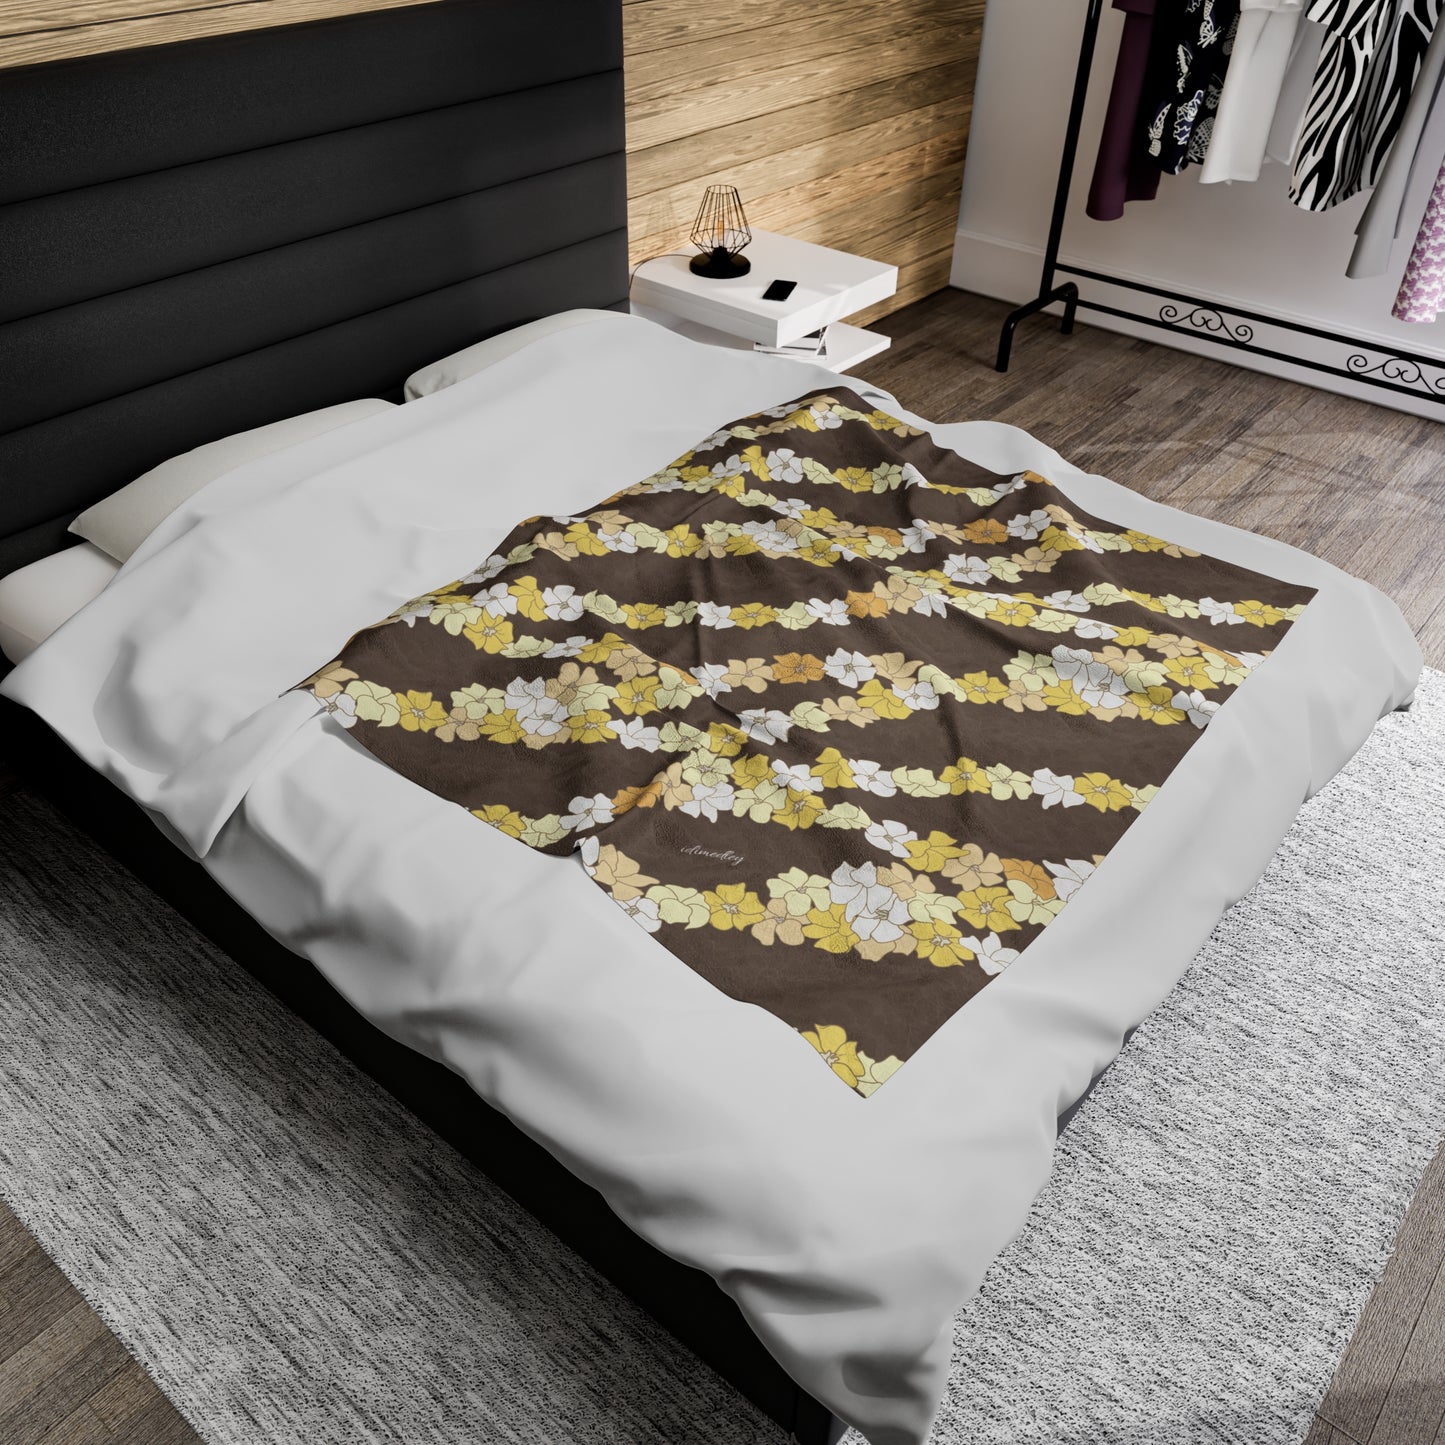 Incredibly Soft Plush Blanket- Puakenikeni En Face Flower Leis in Brown